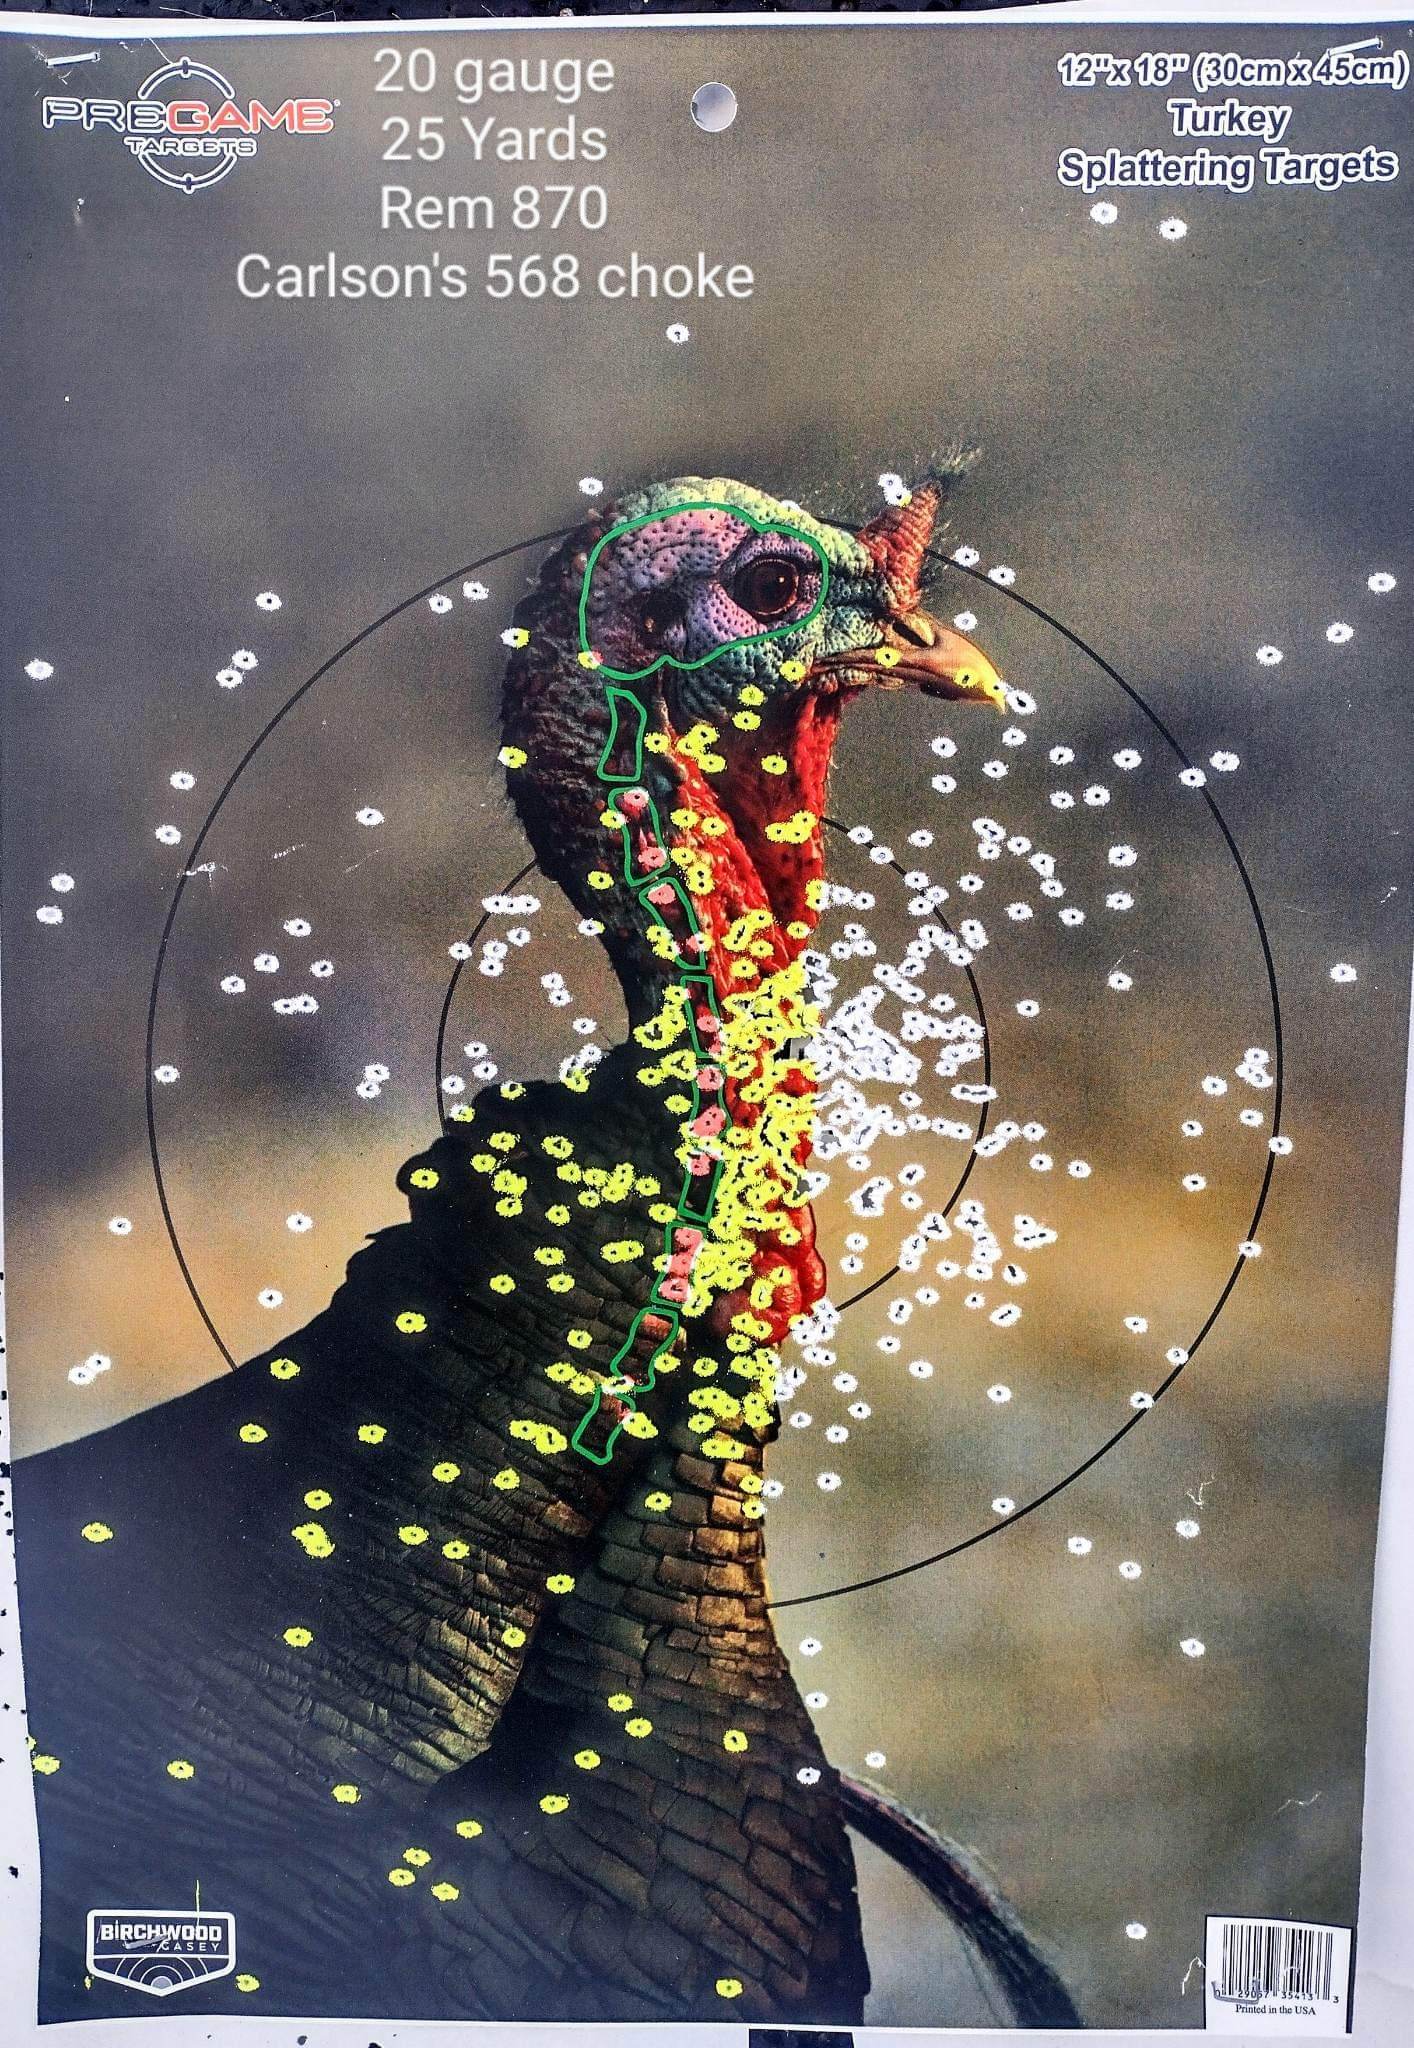 20 Gauge TSS pattern on turkey target at 25 yards